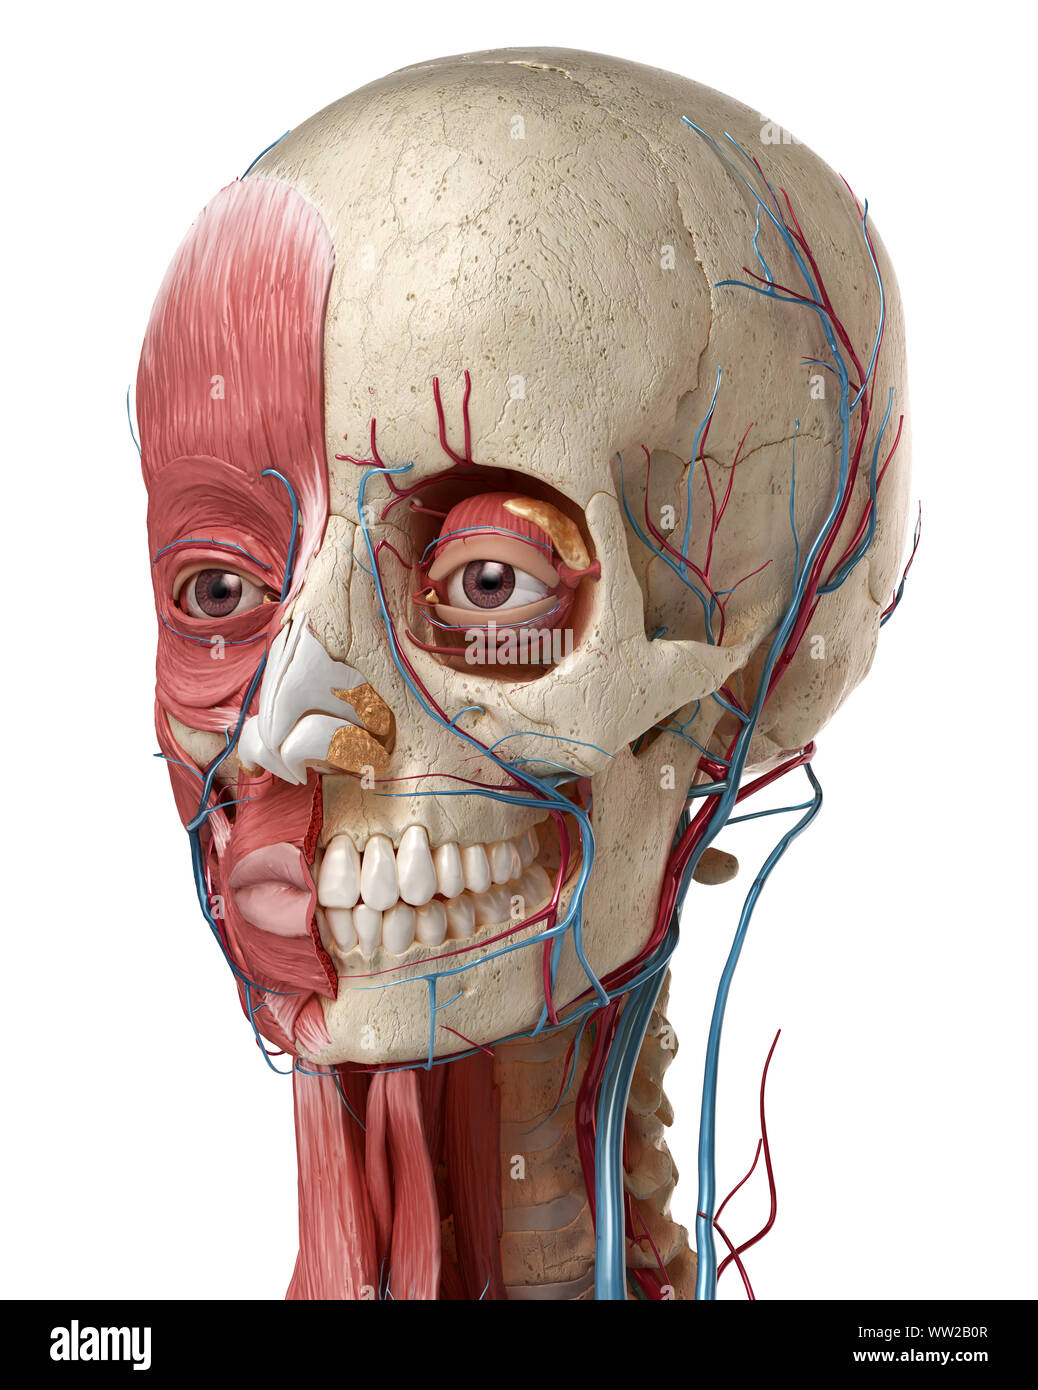 L'anatomie humaine 3d illustration de tête avec crâne, les yeux des ampoules, des vaisseaux sanguins et des muscles, sur fond blanc. Banque D'Images